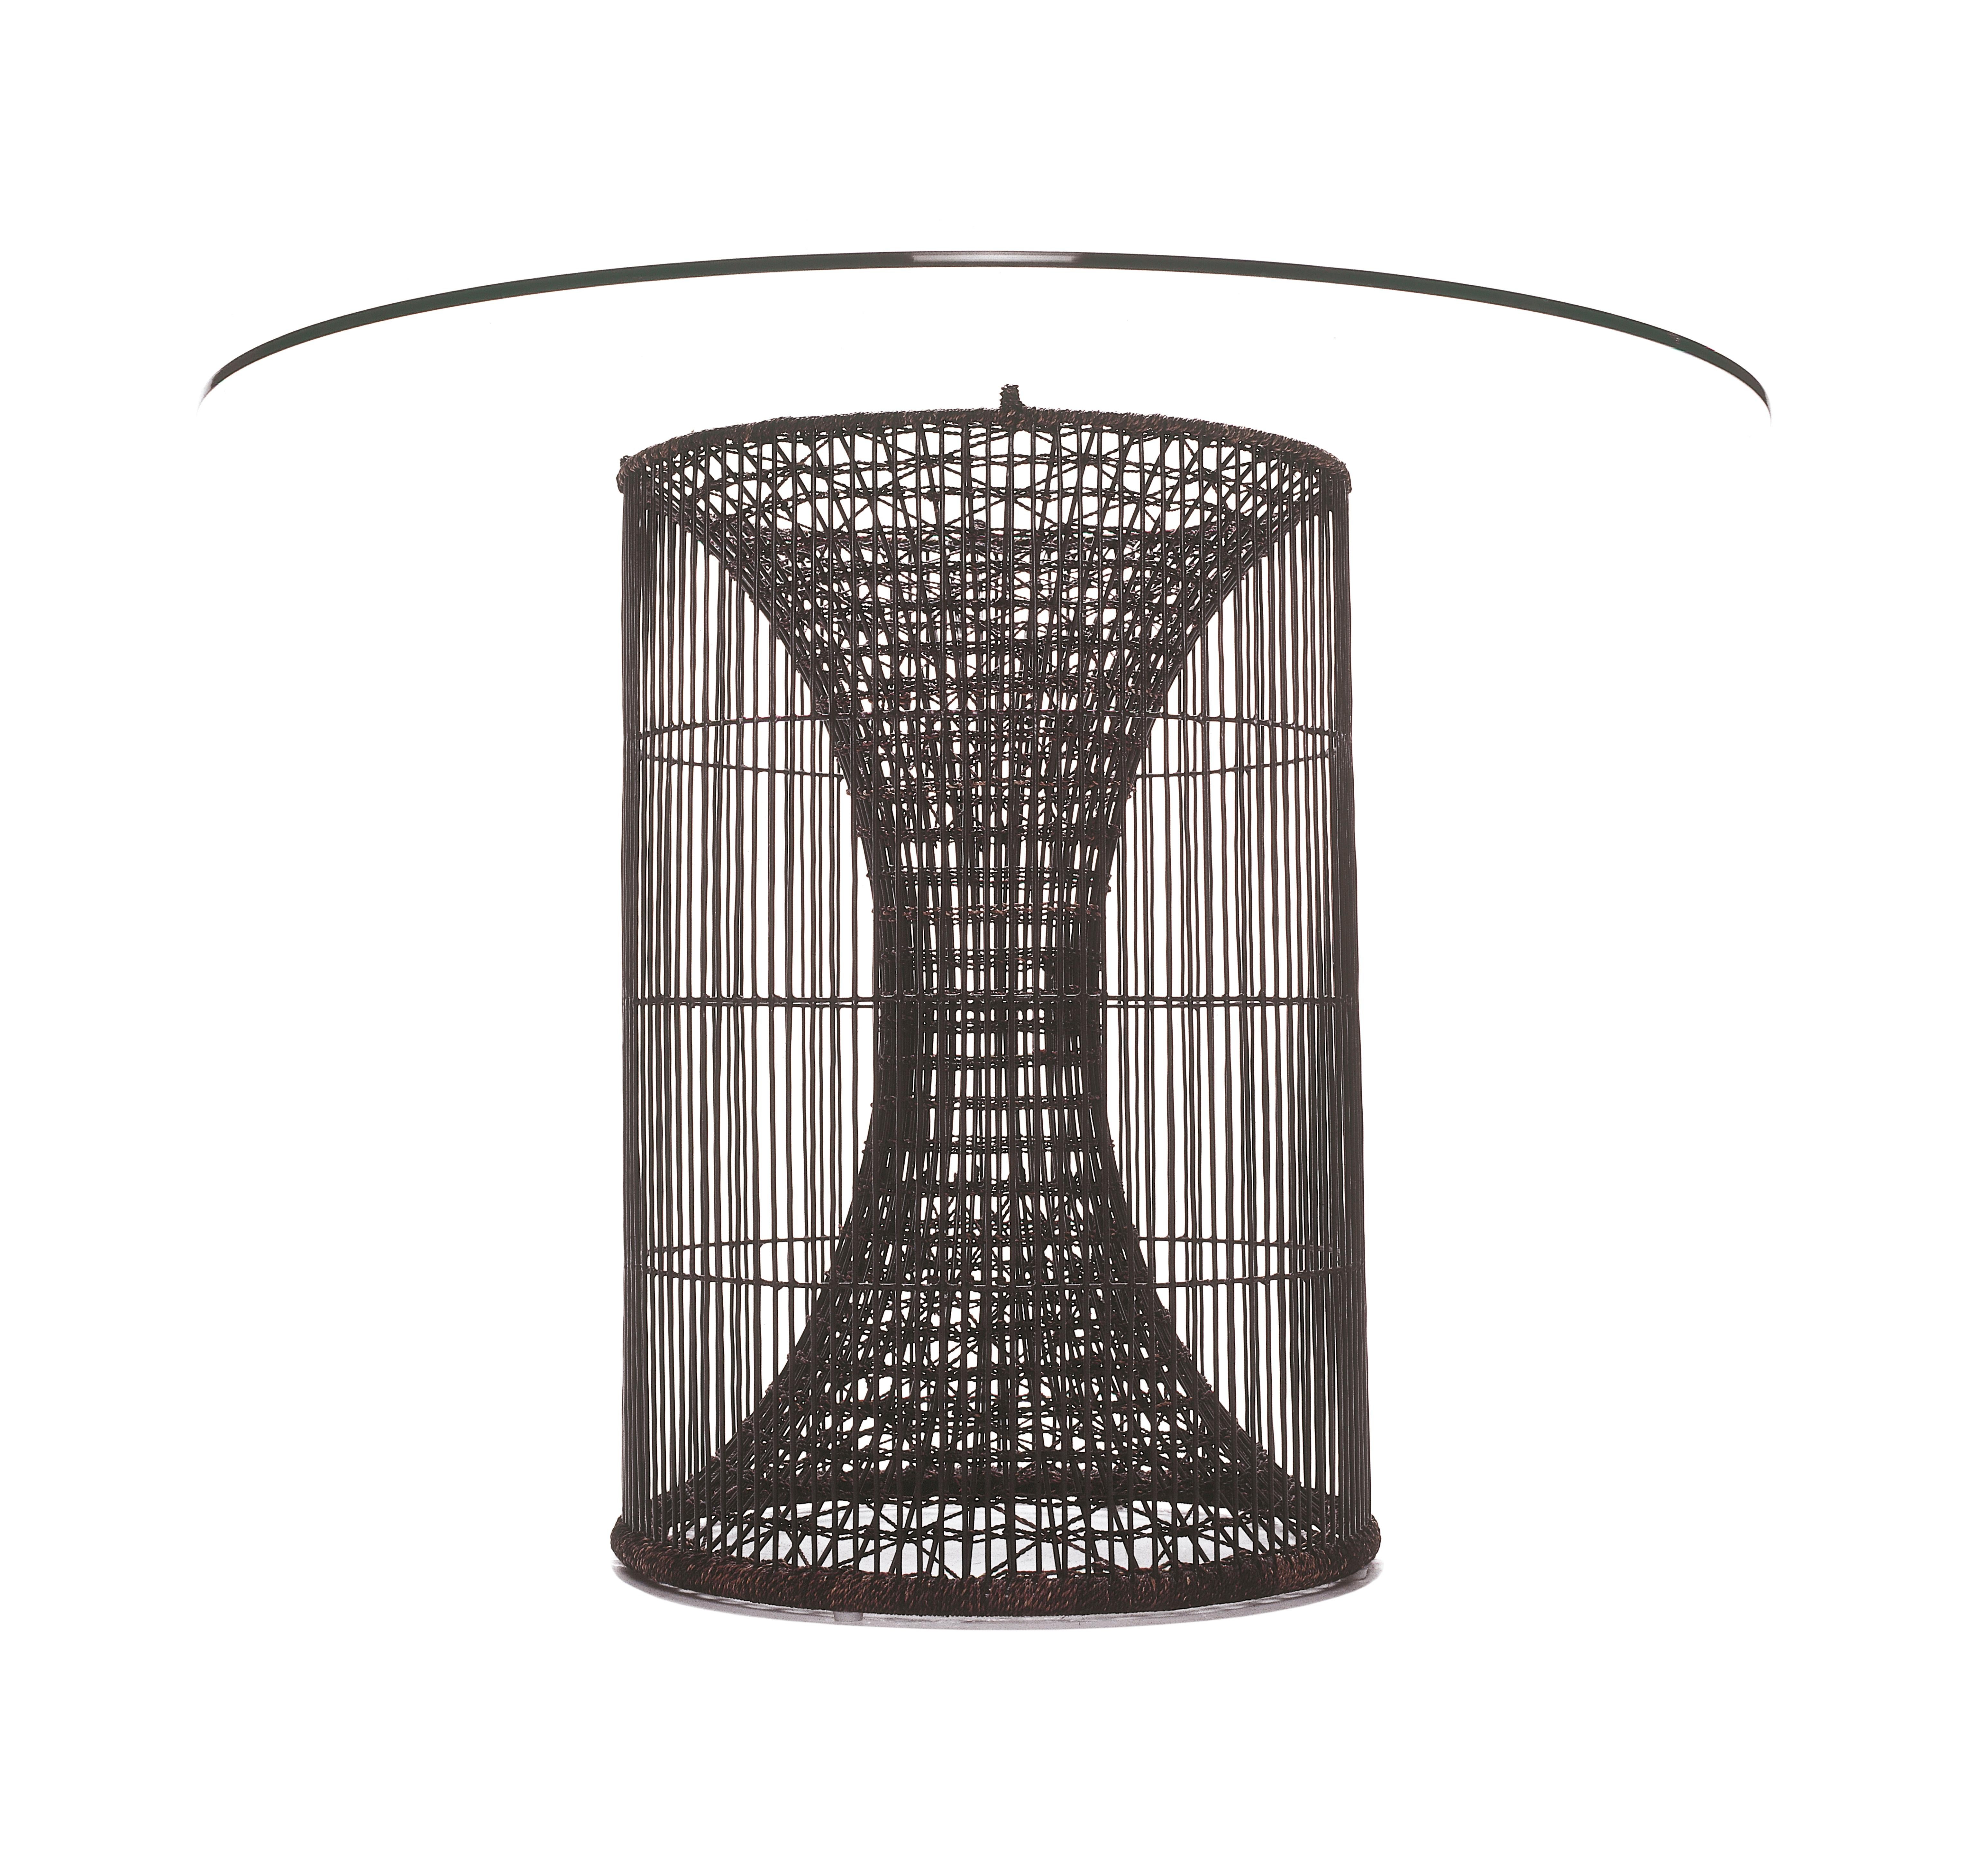 Großer esstisch amaya von Kenneth Cobonpue
MATERIALIEN: Abakka. Stahl. Glas.
Abmessungen: 
Tisch Durchmesser 76 cm x H 74 cm
Glas Durchmesser 137cm x H 1cm

Inspiriert von Fischreusen, ähneln die Amaya-Tische einem Strudel, der von einem Zylinder